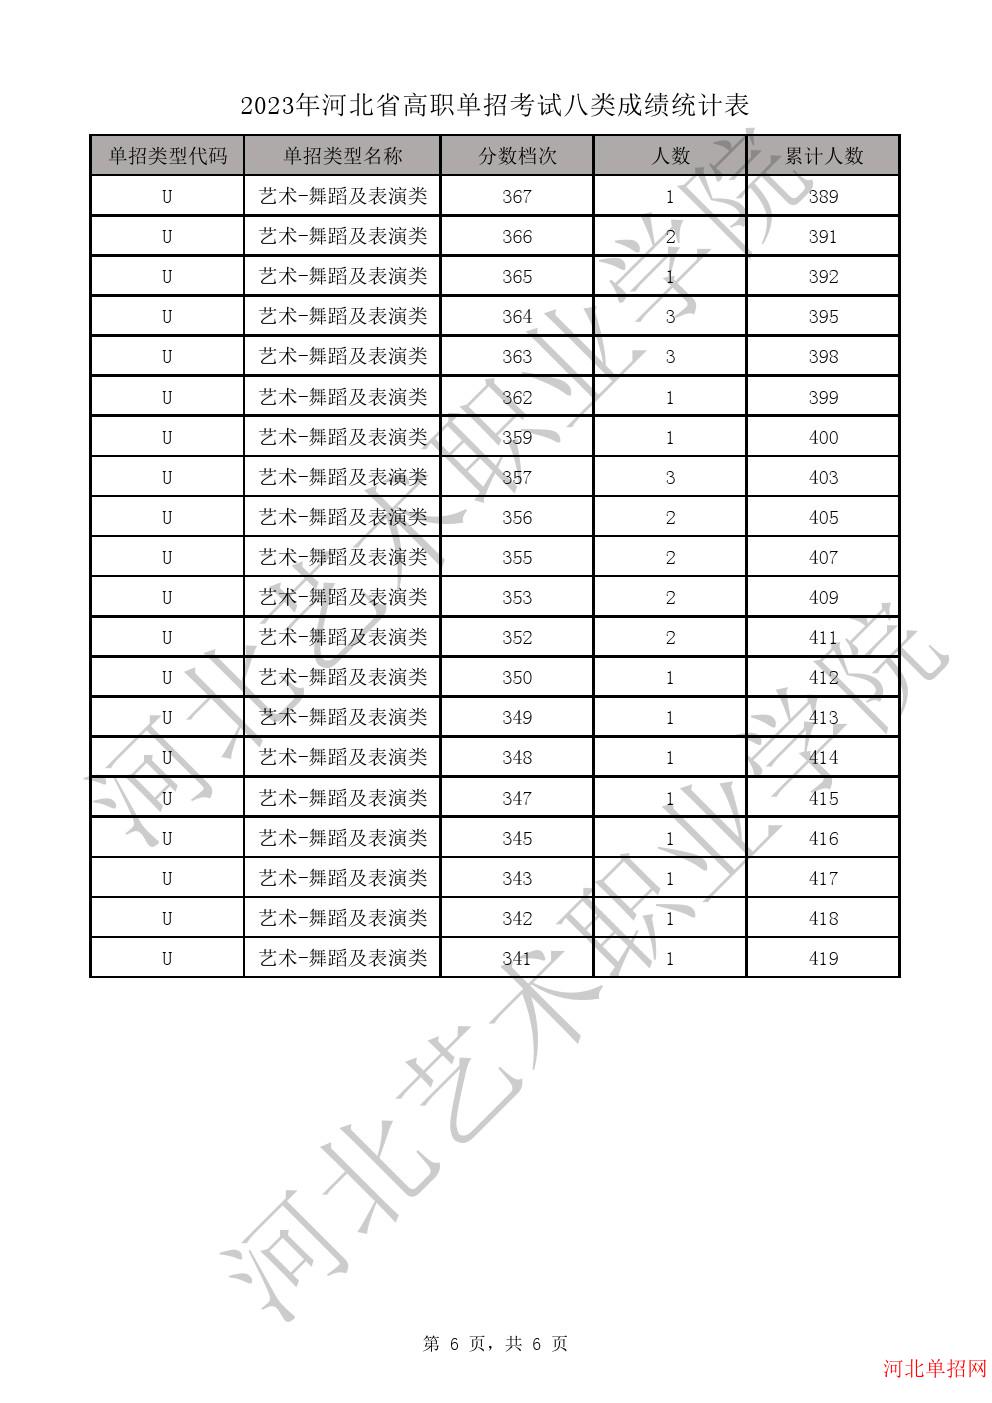 2023年河北省高职单招考试八类一分一档表-U艺术-舞蹈及表演类一分一档表 图6